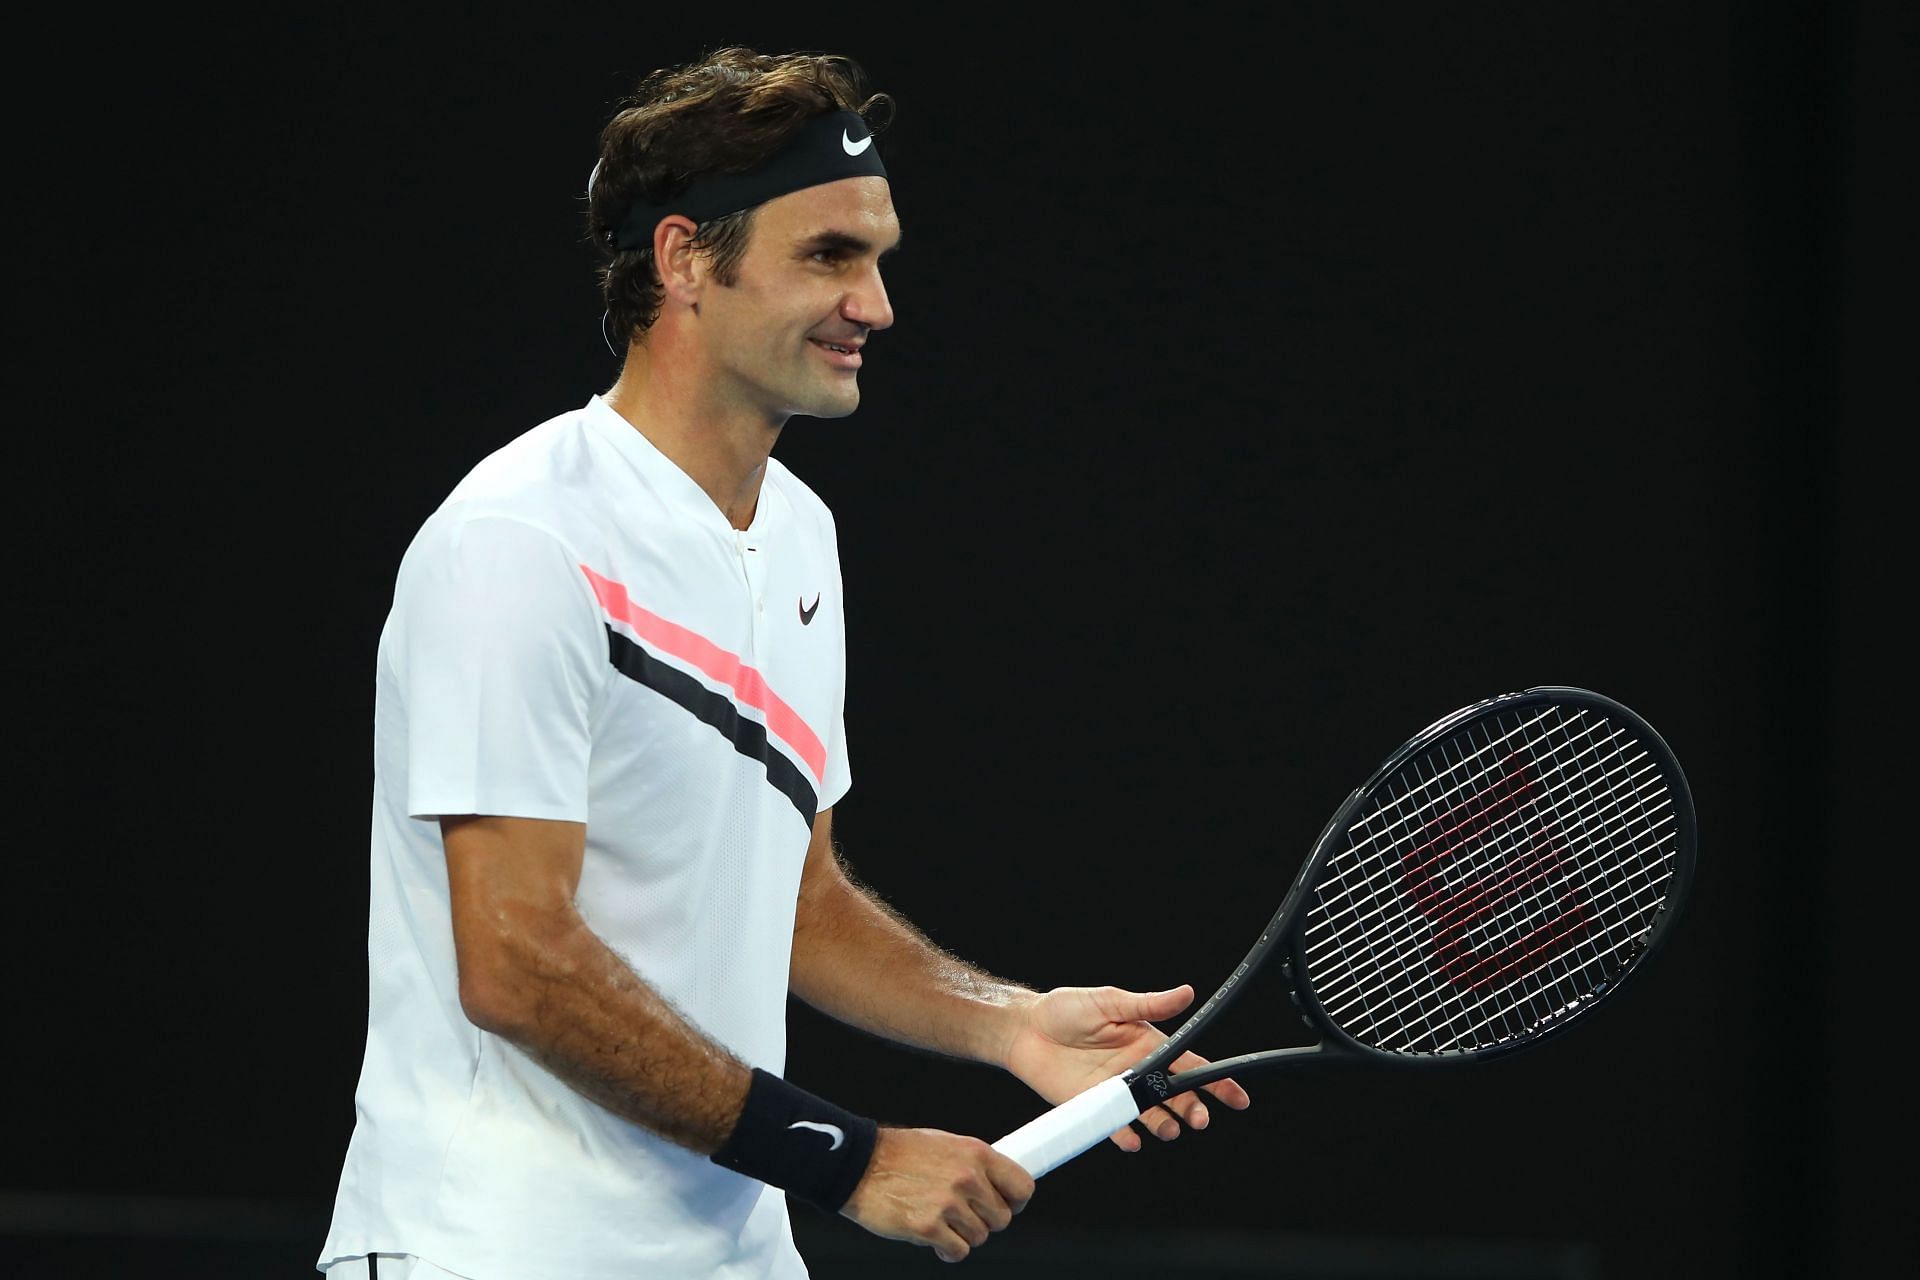 Roger Federer looks on at the 2018 Australian Open